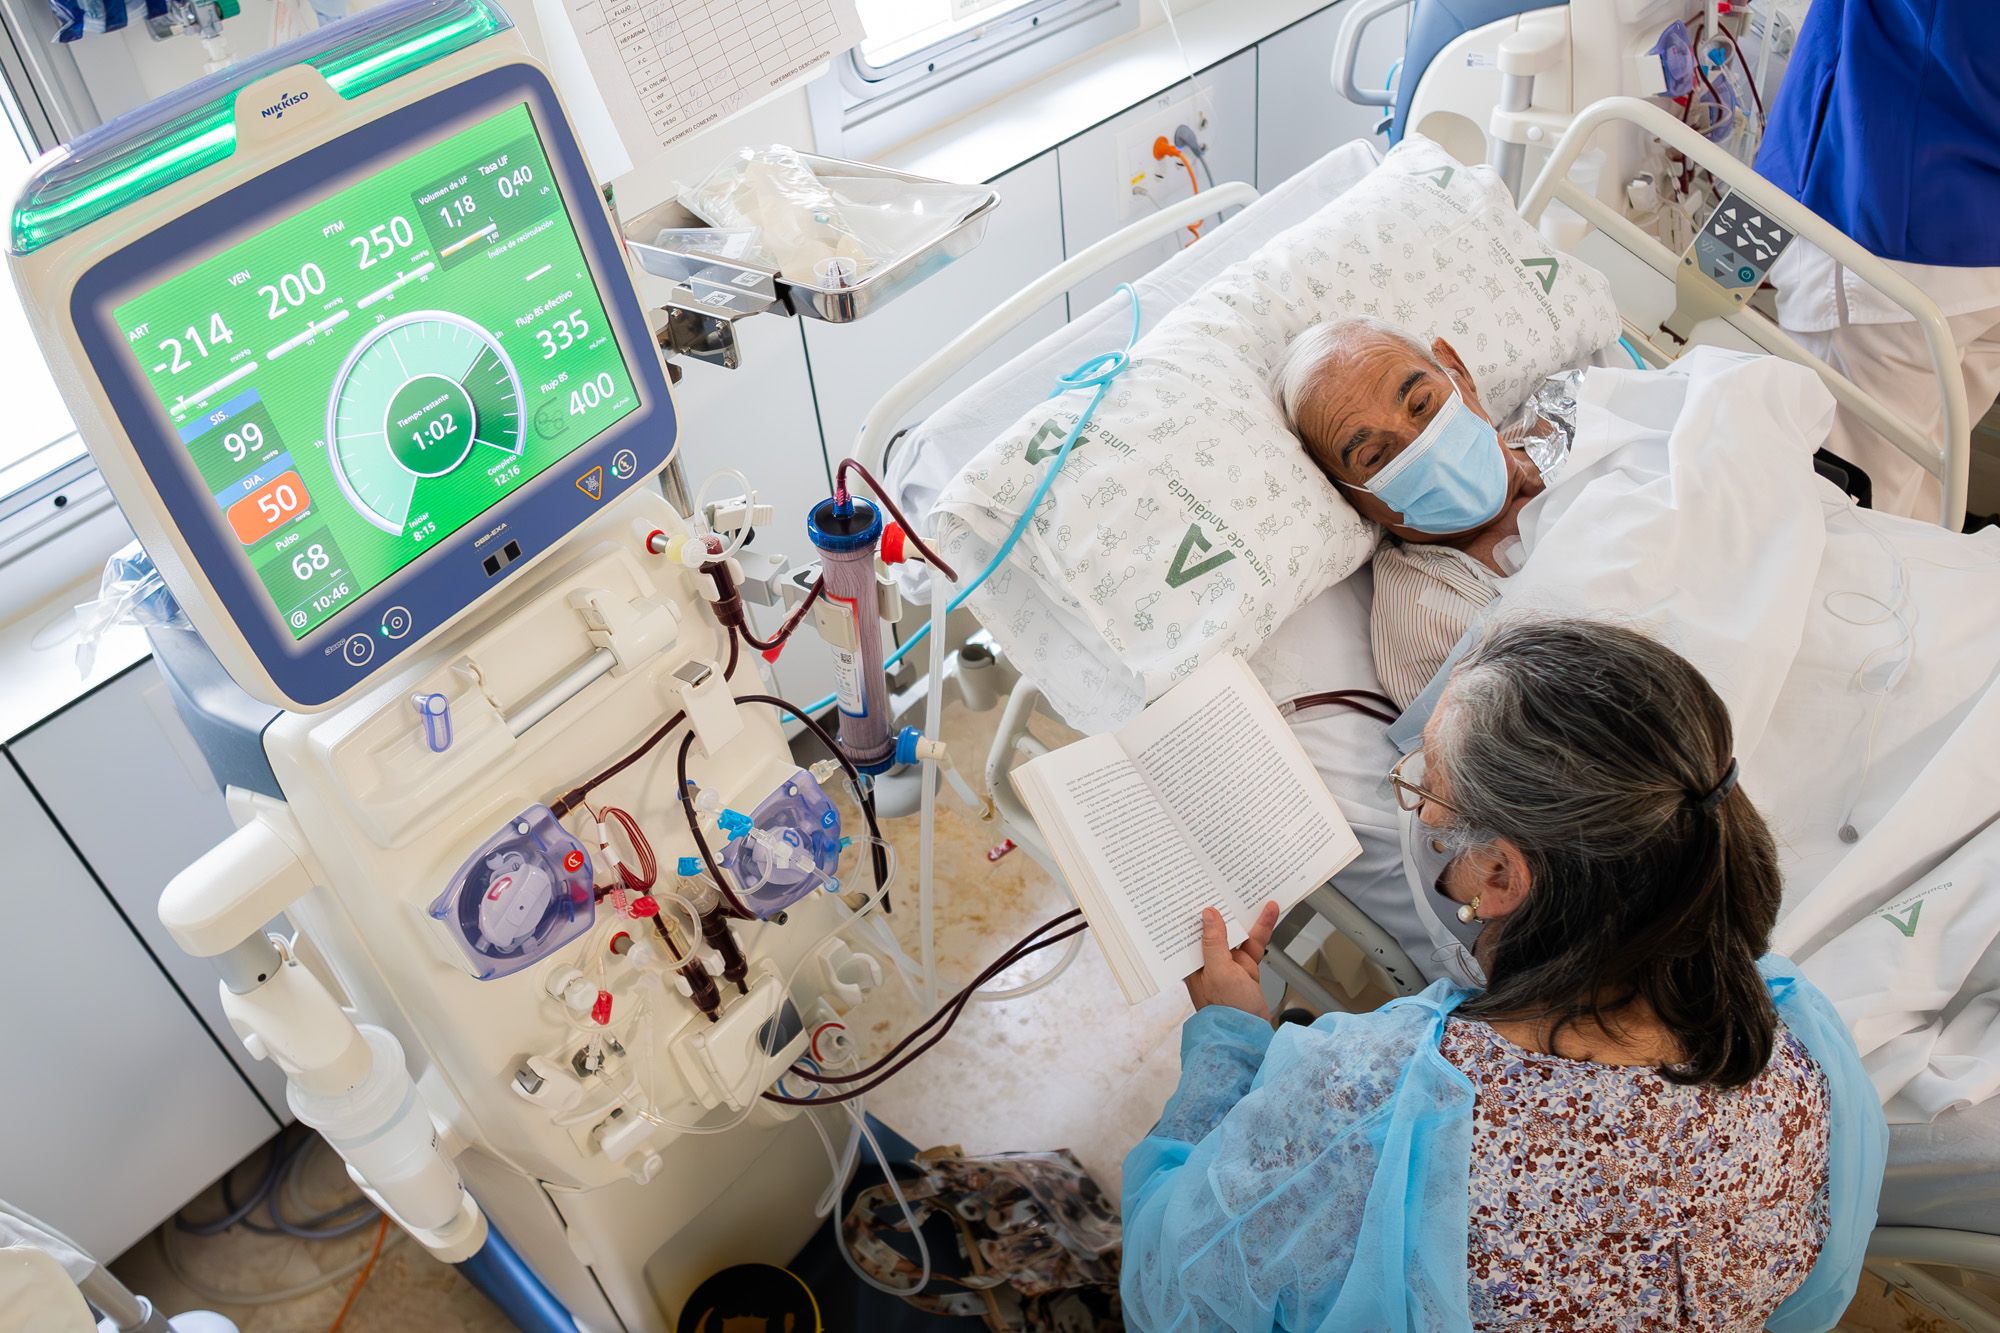 Mercedes, voluntaria del proyecto 'Medicina para el alma', lee en voz alta a Pedro durante su sesión de hemodiálisis.